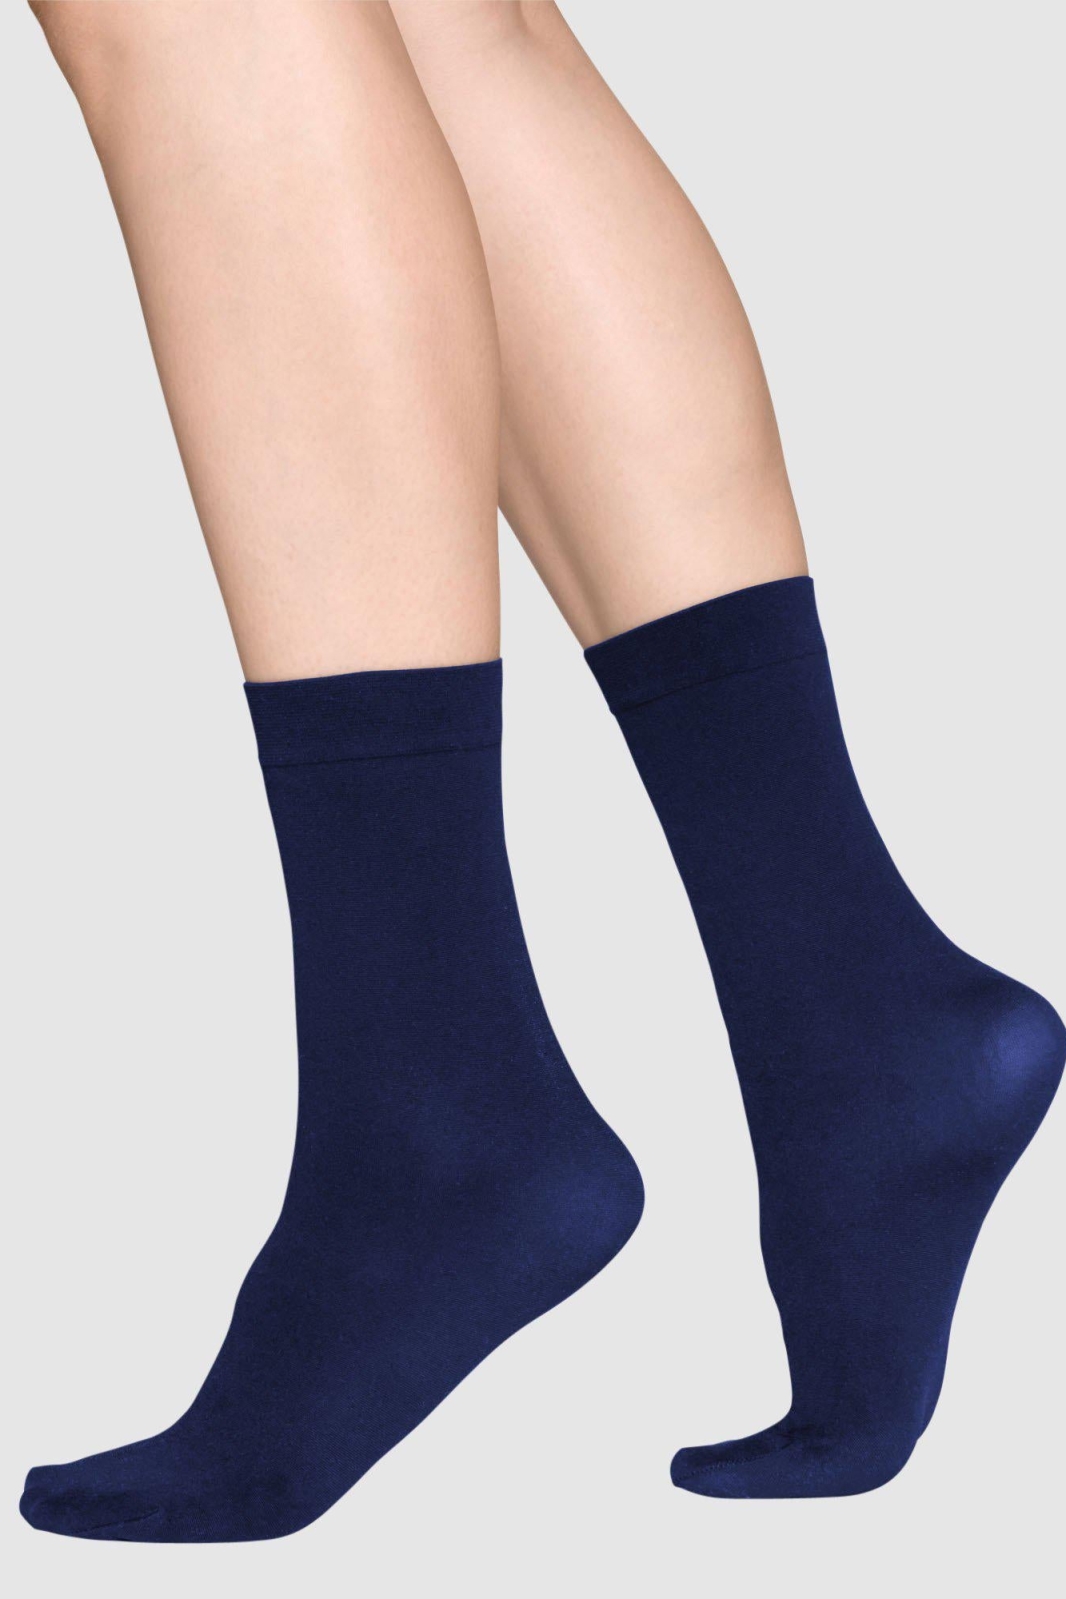 Swedish Stockings Ingrid Premium Socken Navy